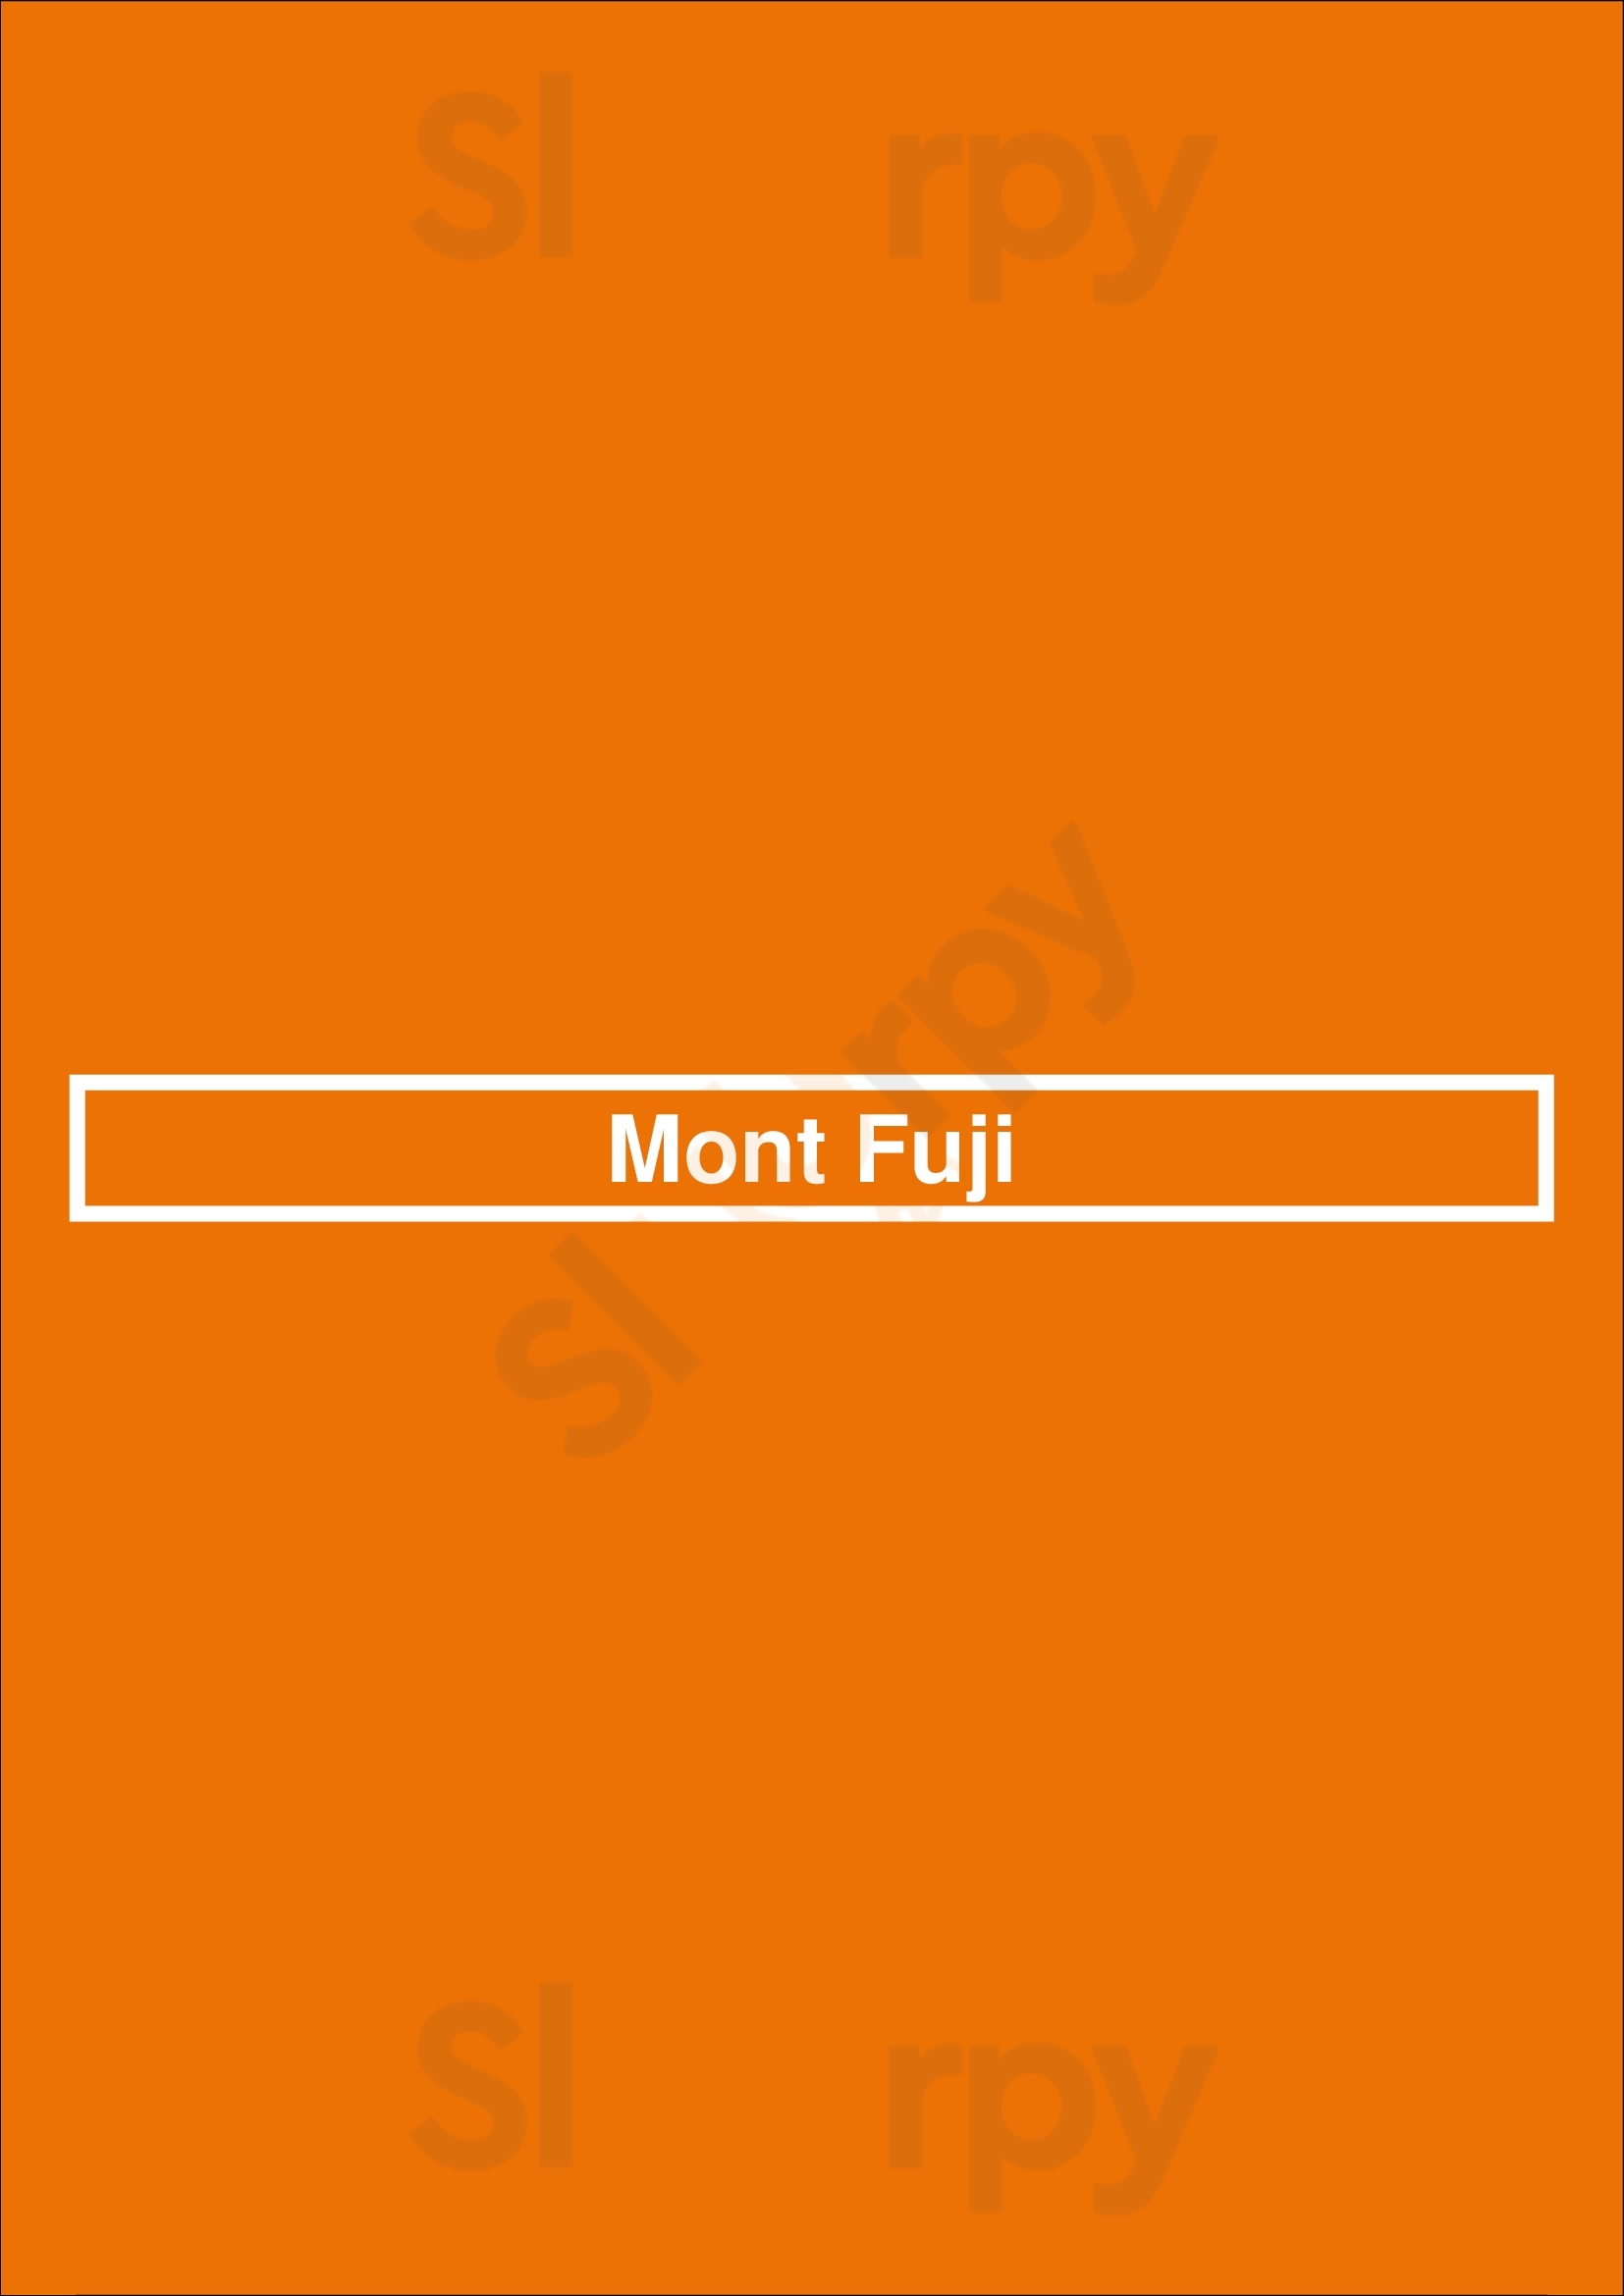 Mont Fuji Lyon Menu - 1